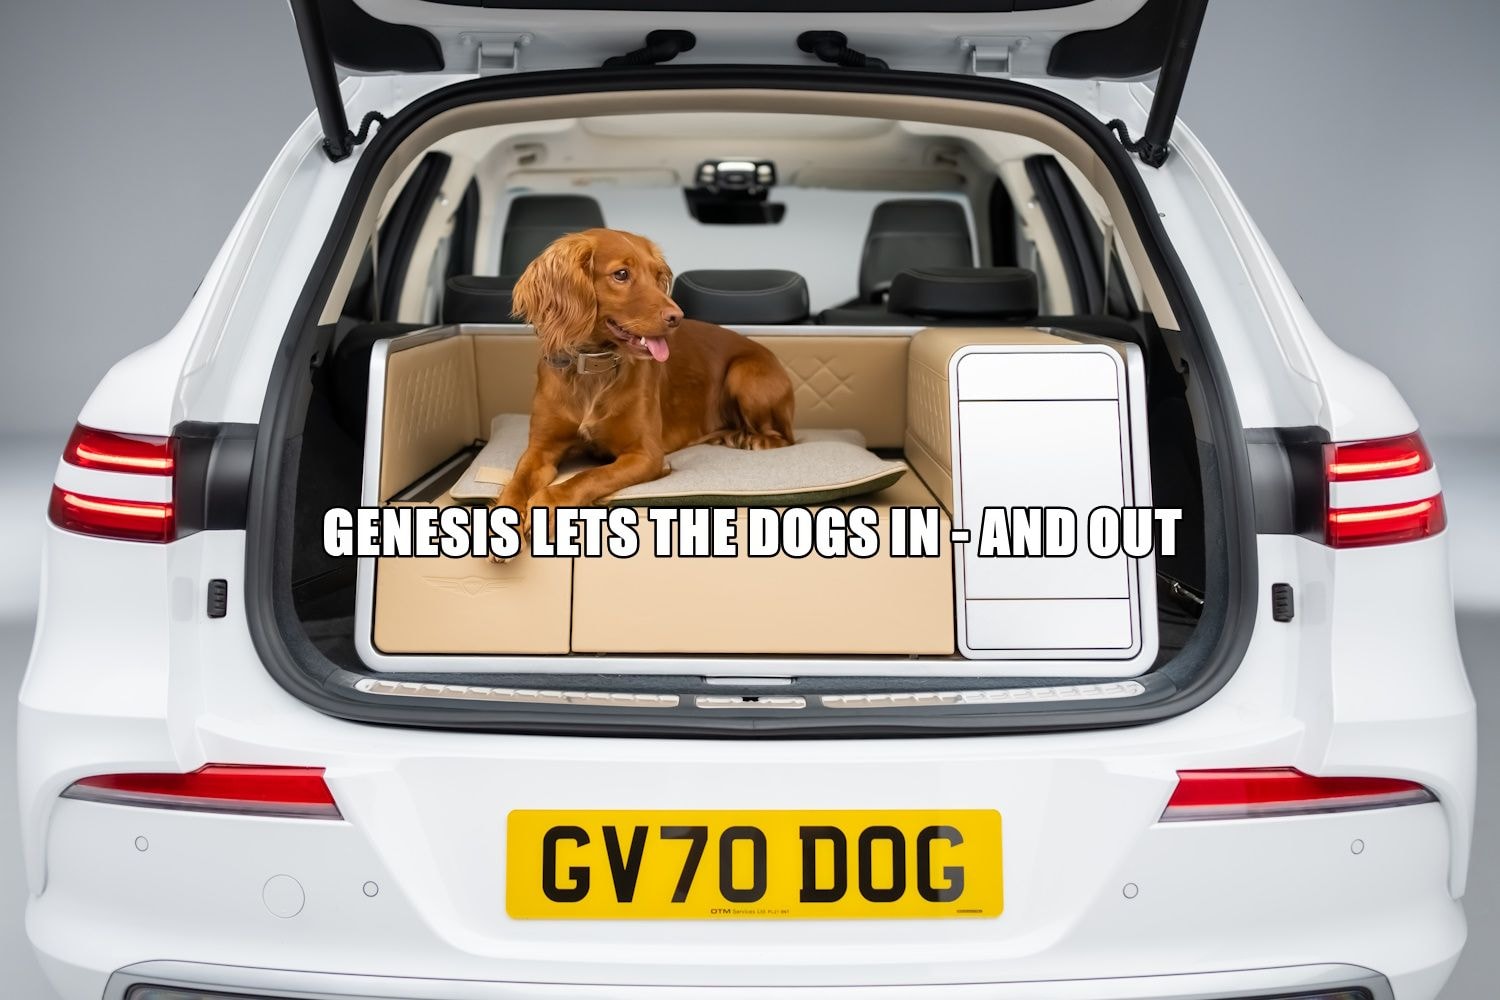 Moduł koncepcyjny Genesis X Dog zapewnia wygodę i rozpieszczanie Twojego psa